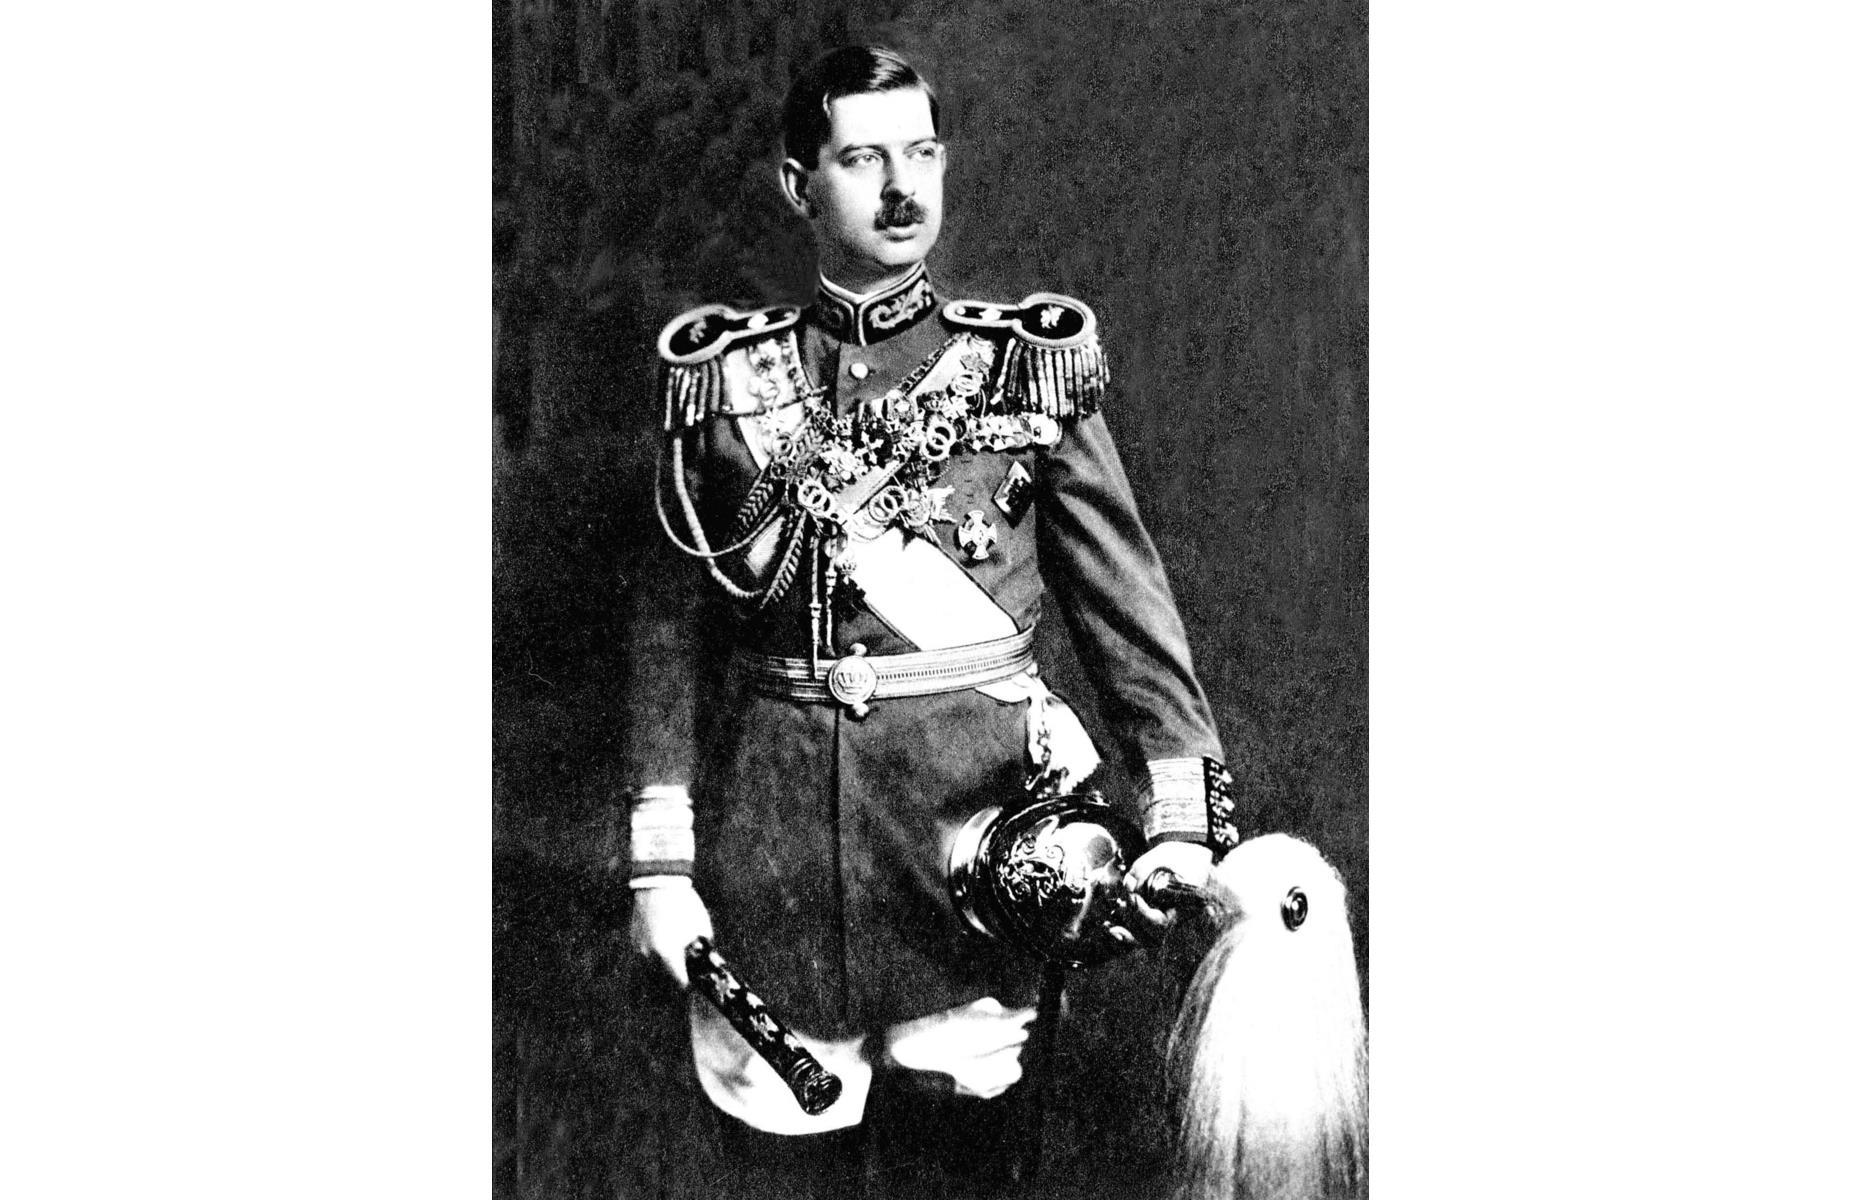 1925: King Carol II